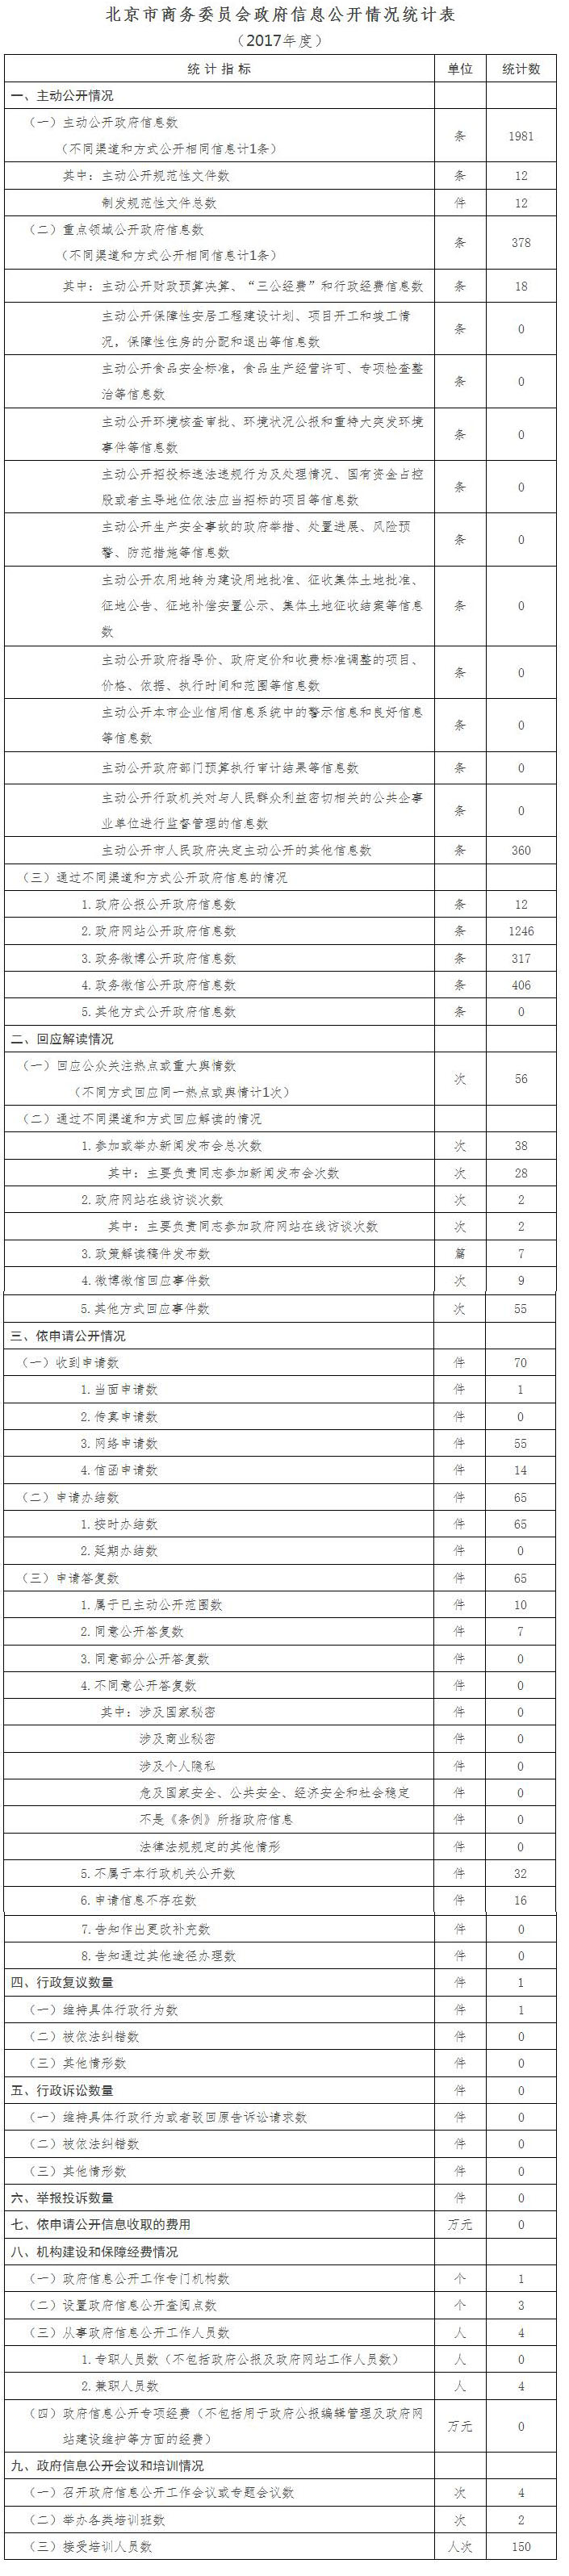 北京市商务委员会政府信息公开情况统计 (2017年度)